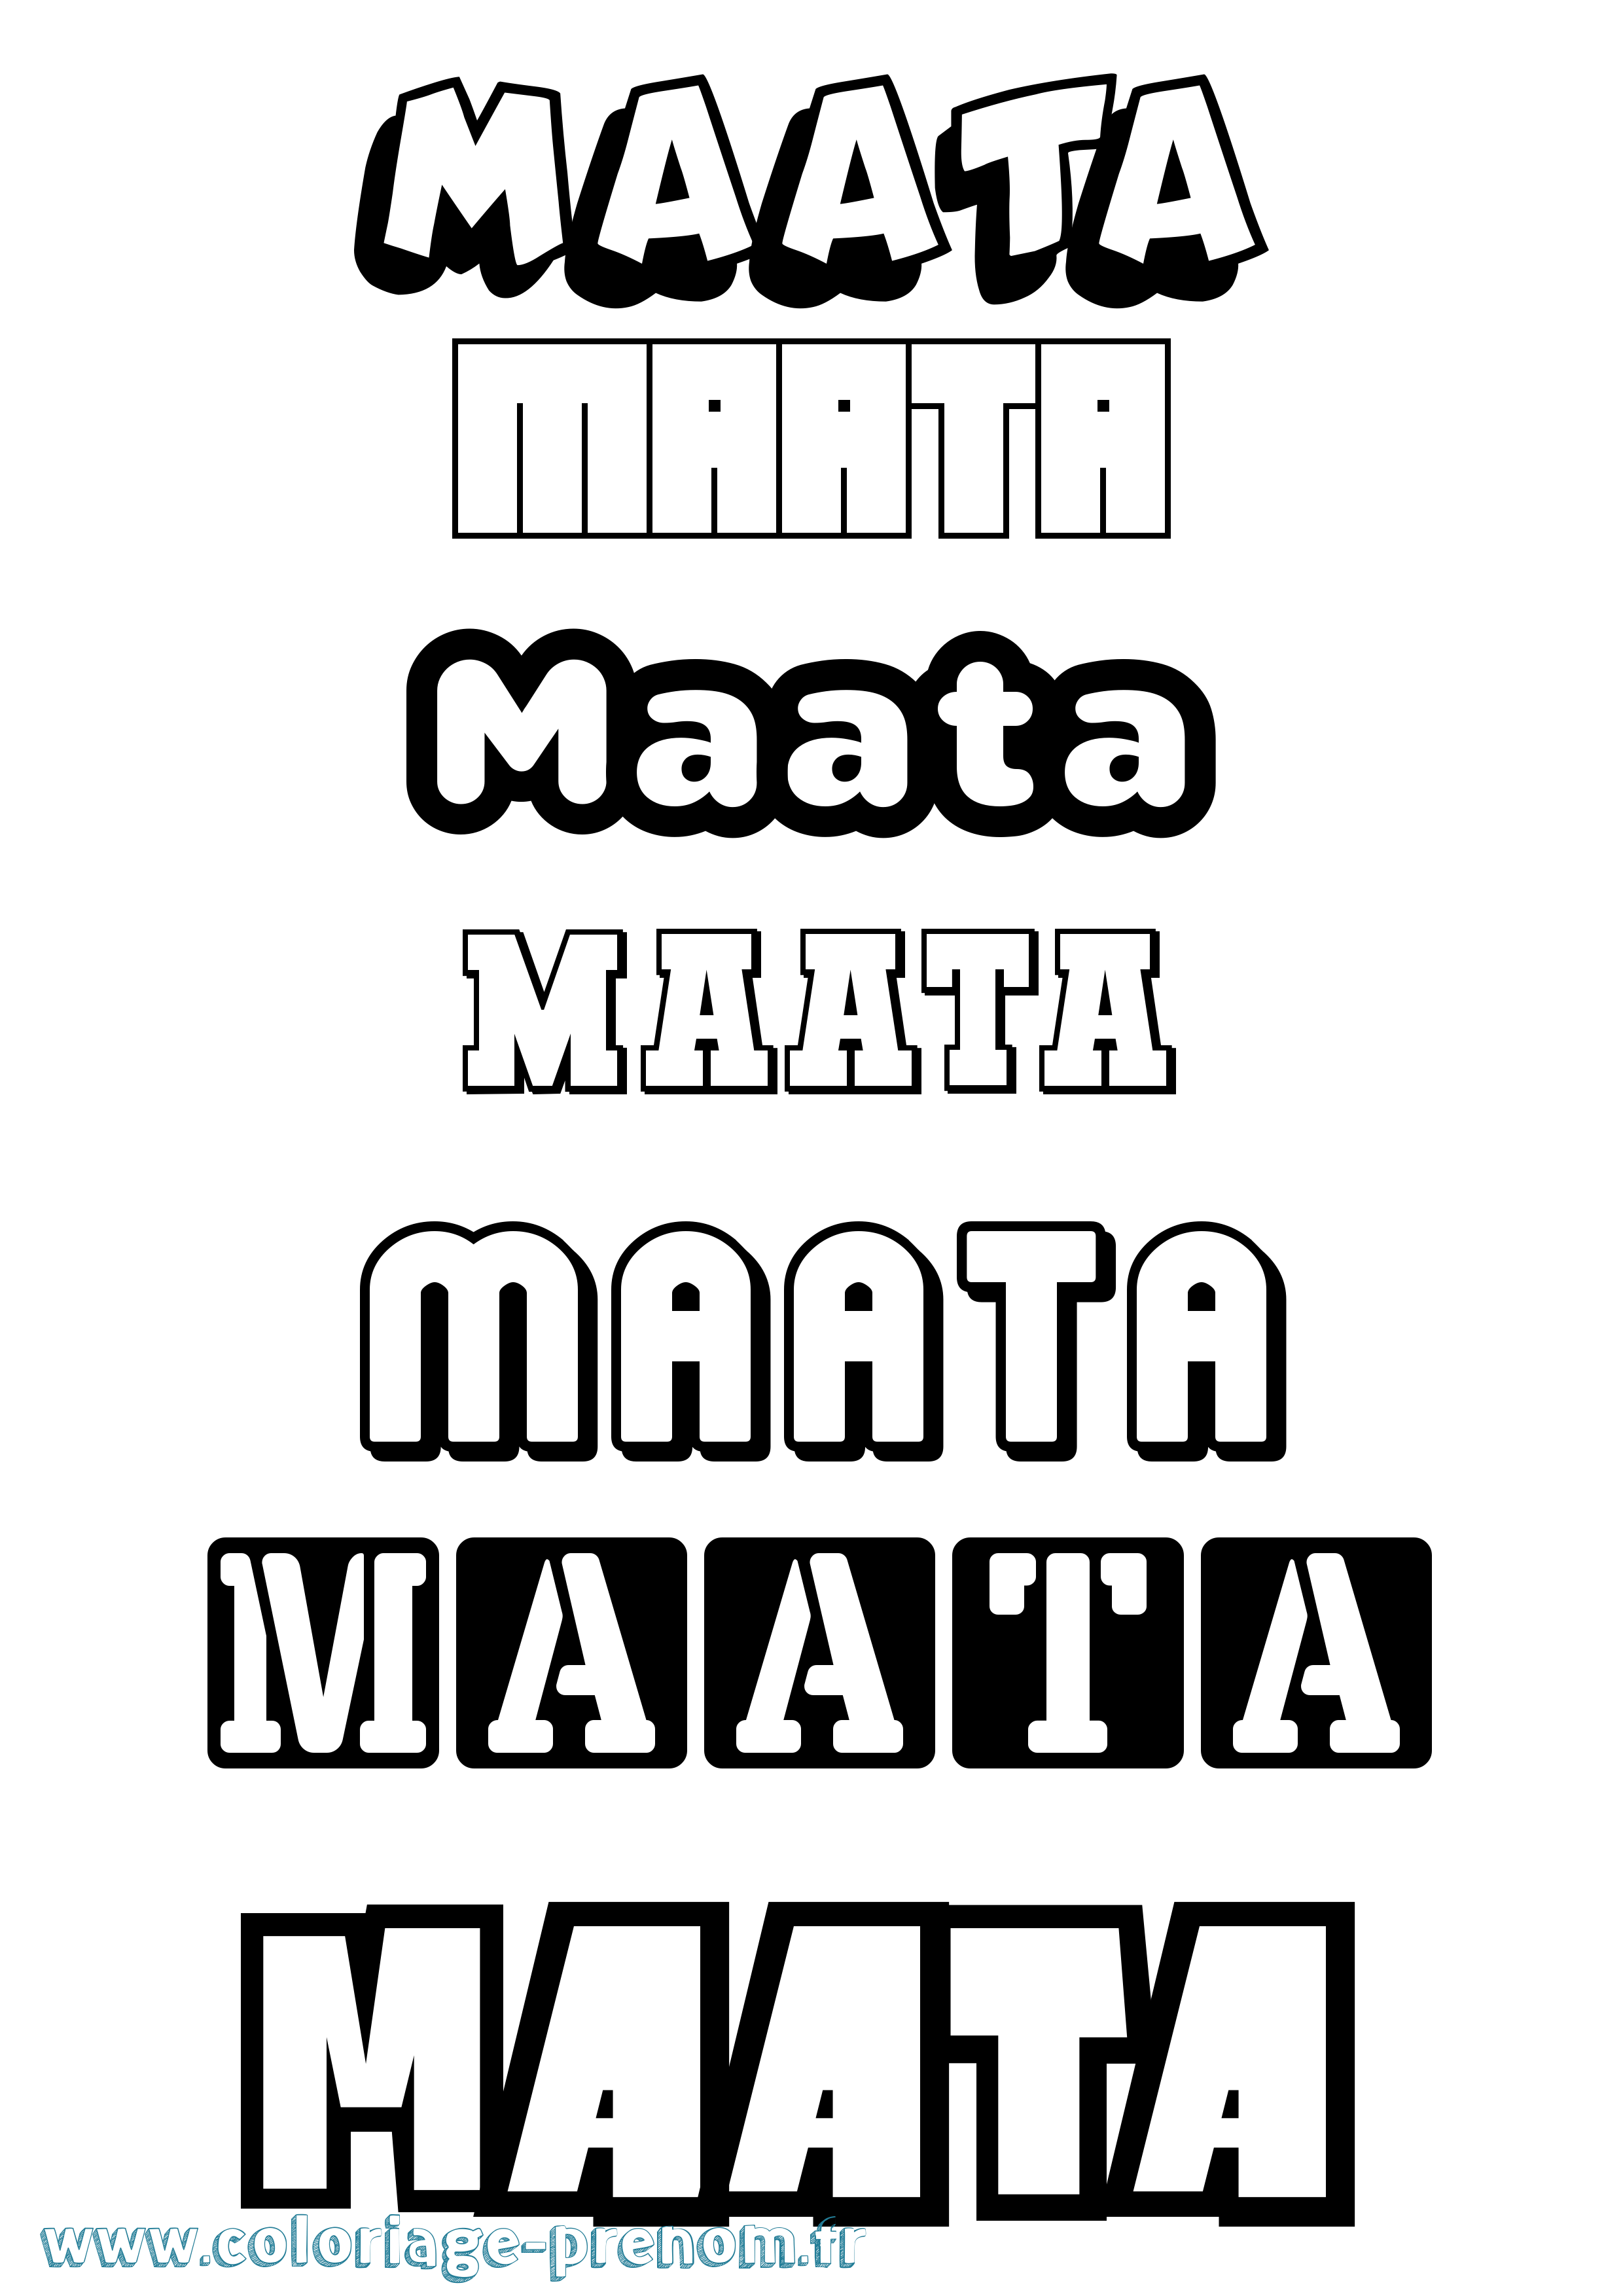 Coloriage prénom Maata Simple